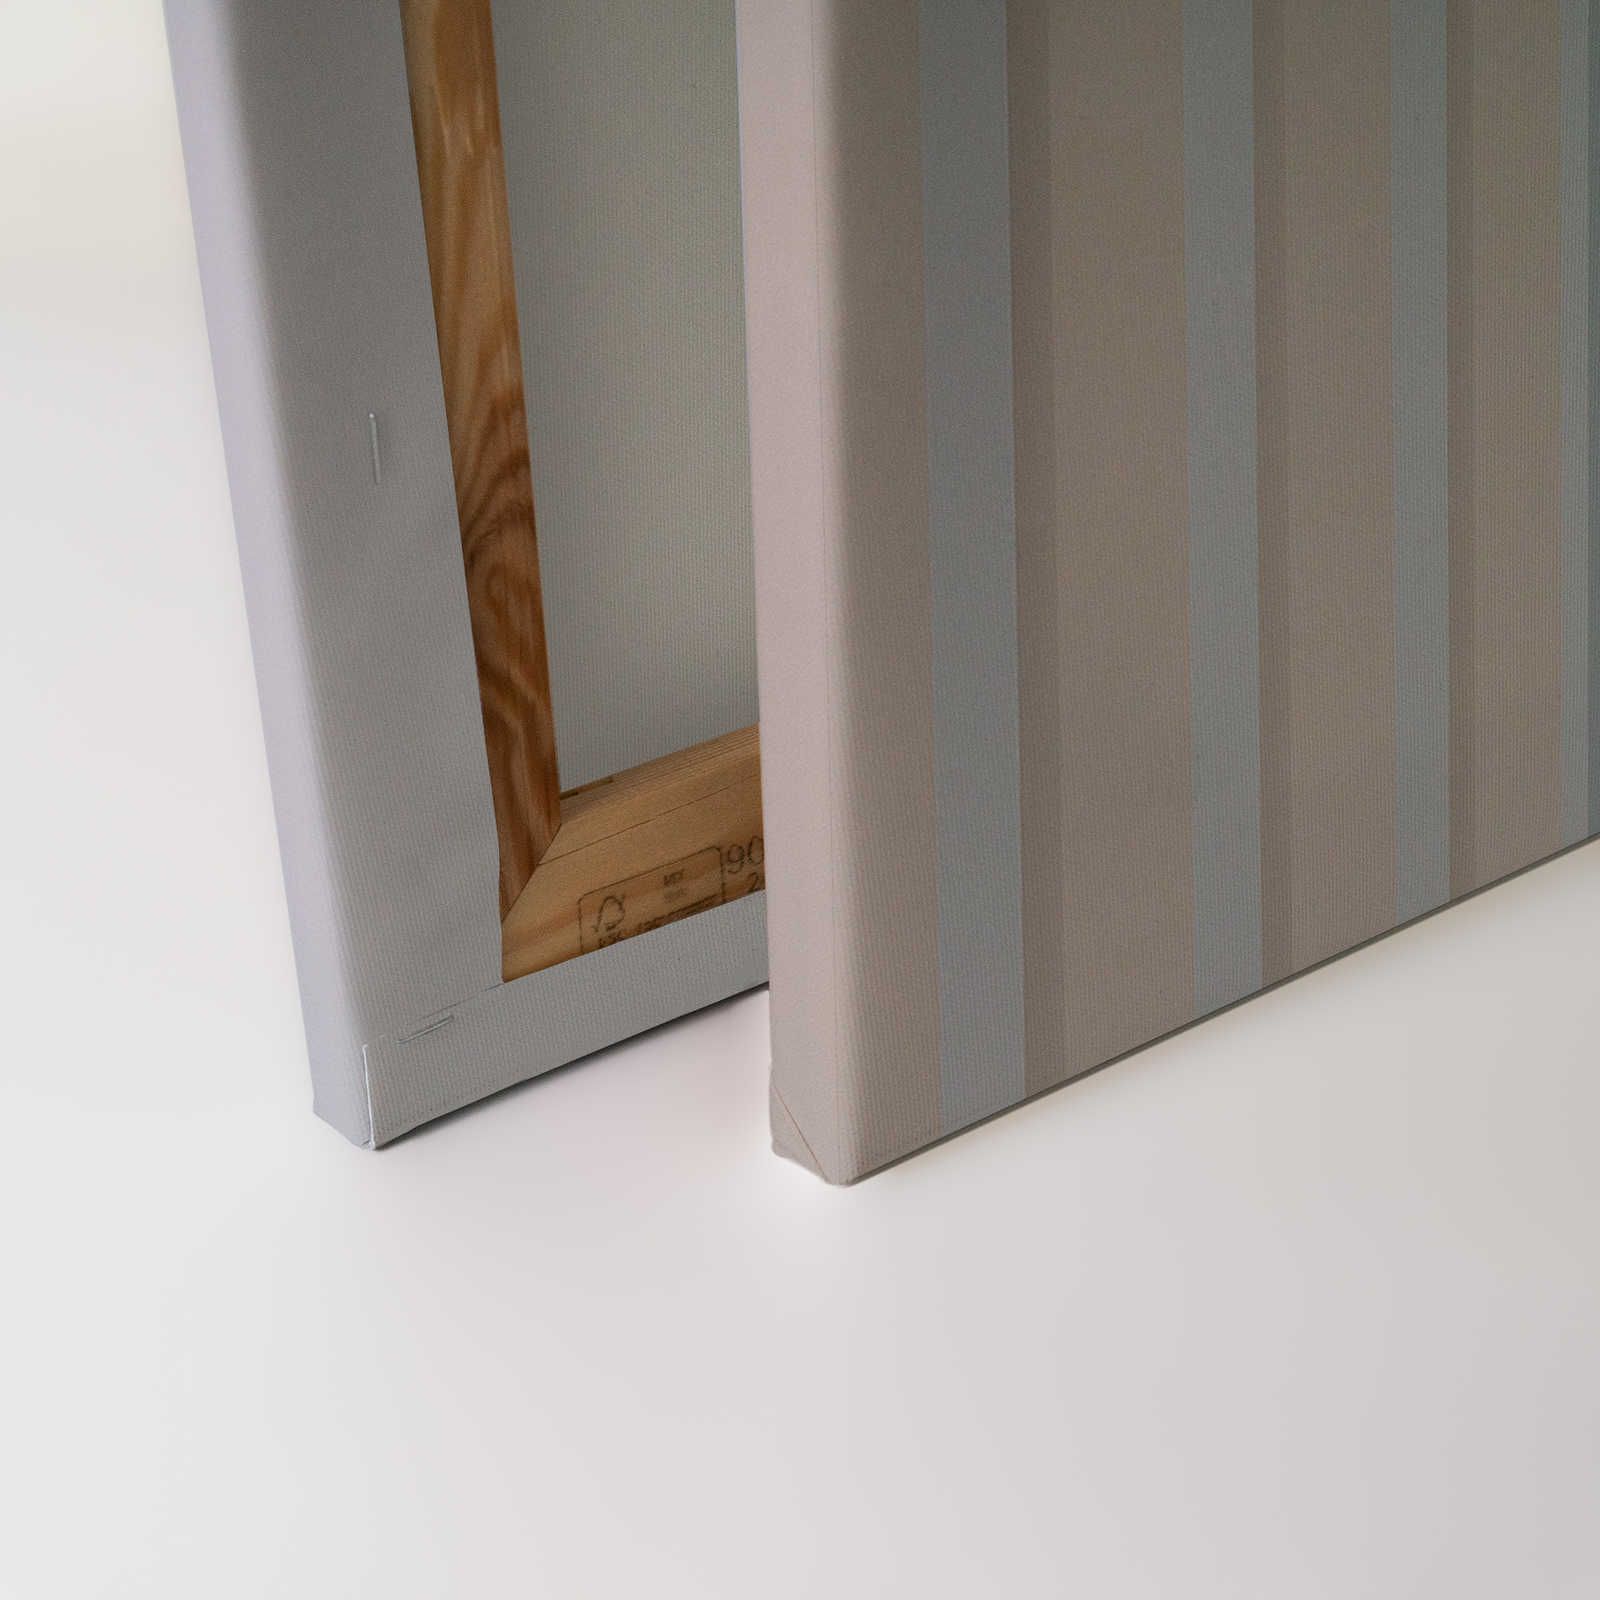             Illusion Room 2 - Quadro su tela con disegno a righe 3D in blu e grigio - 0,90 m x 0,60 m
        